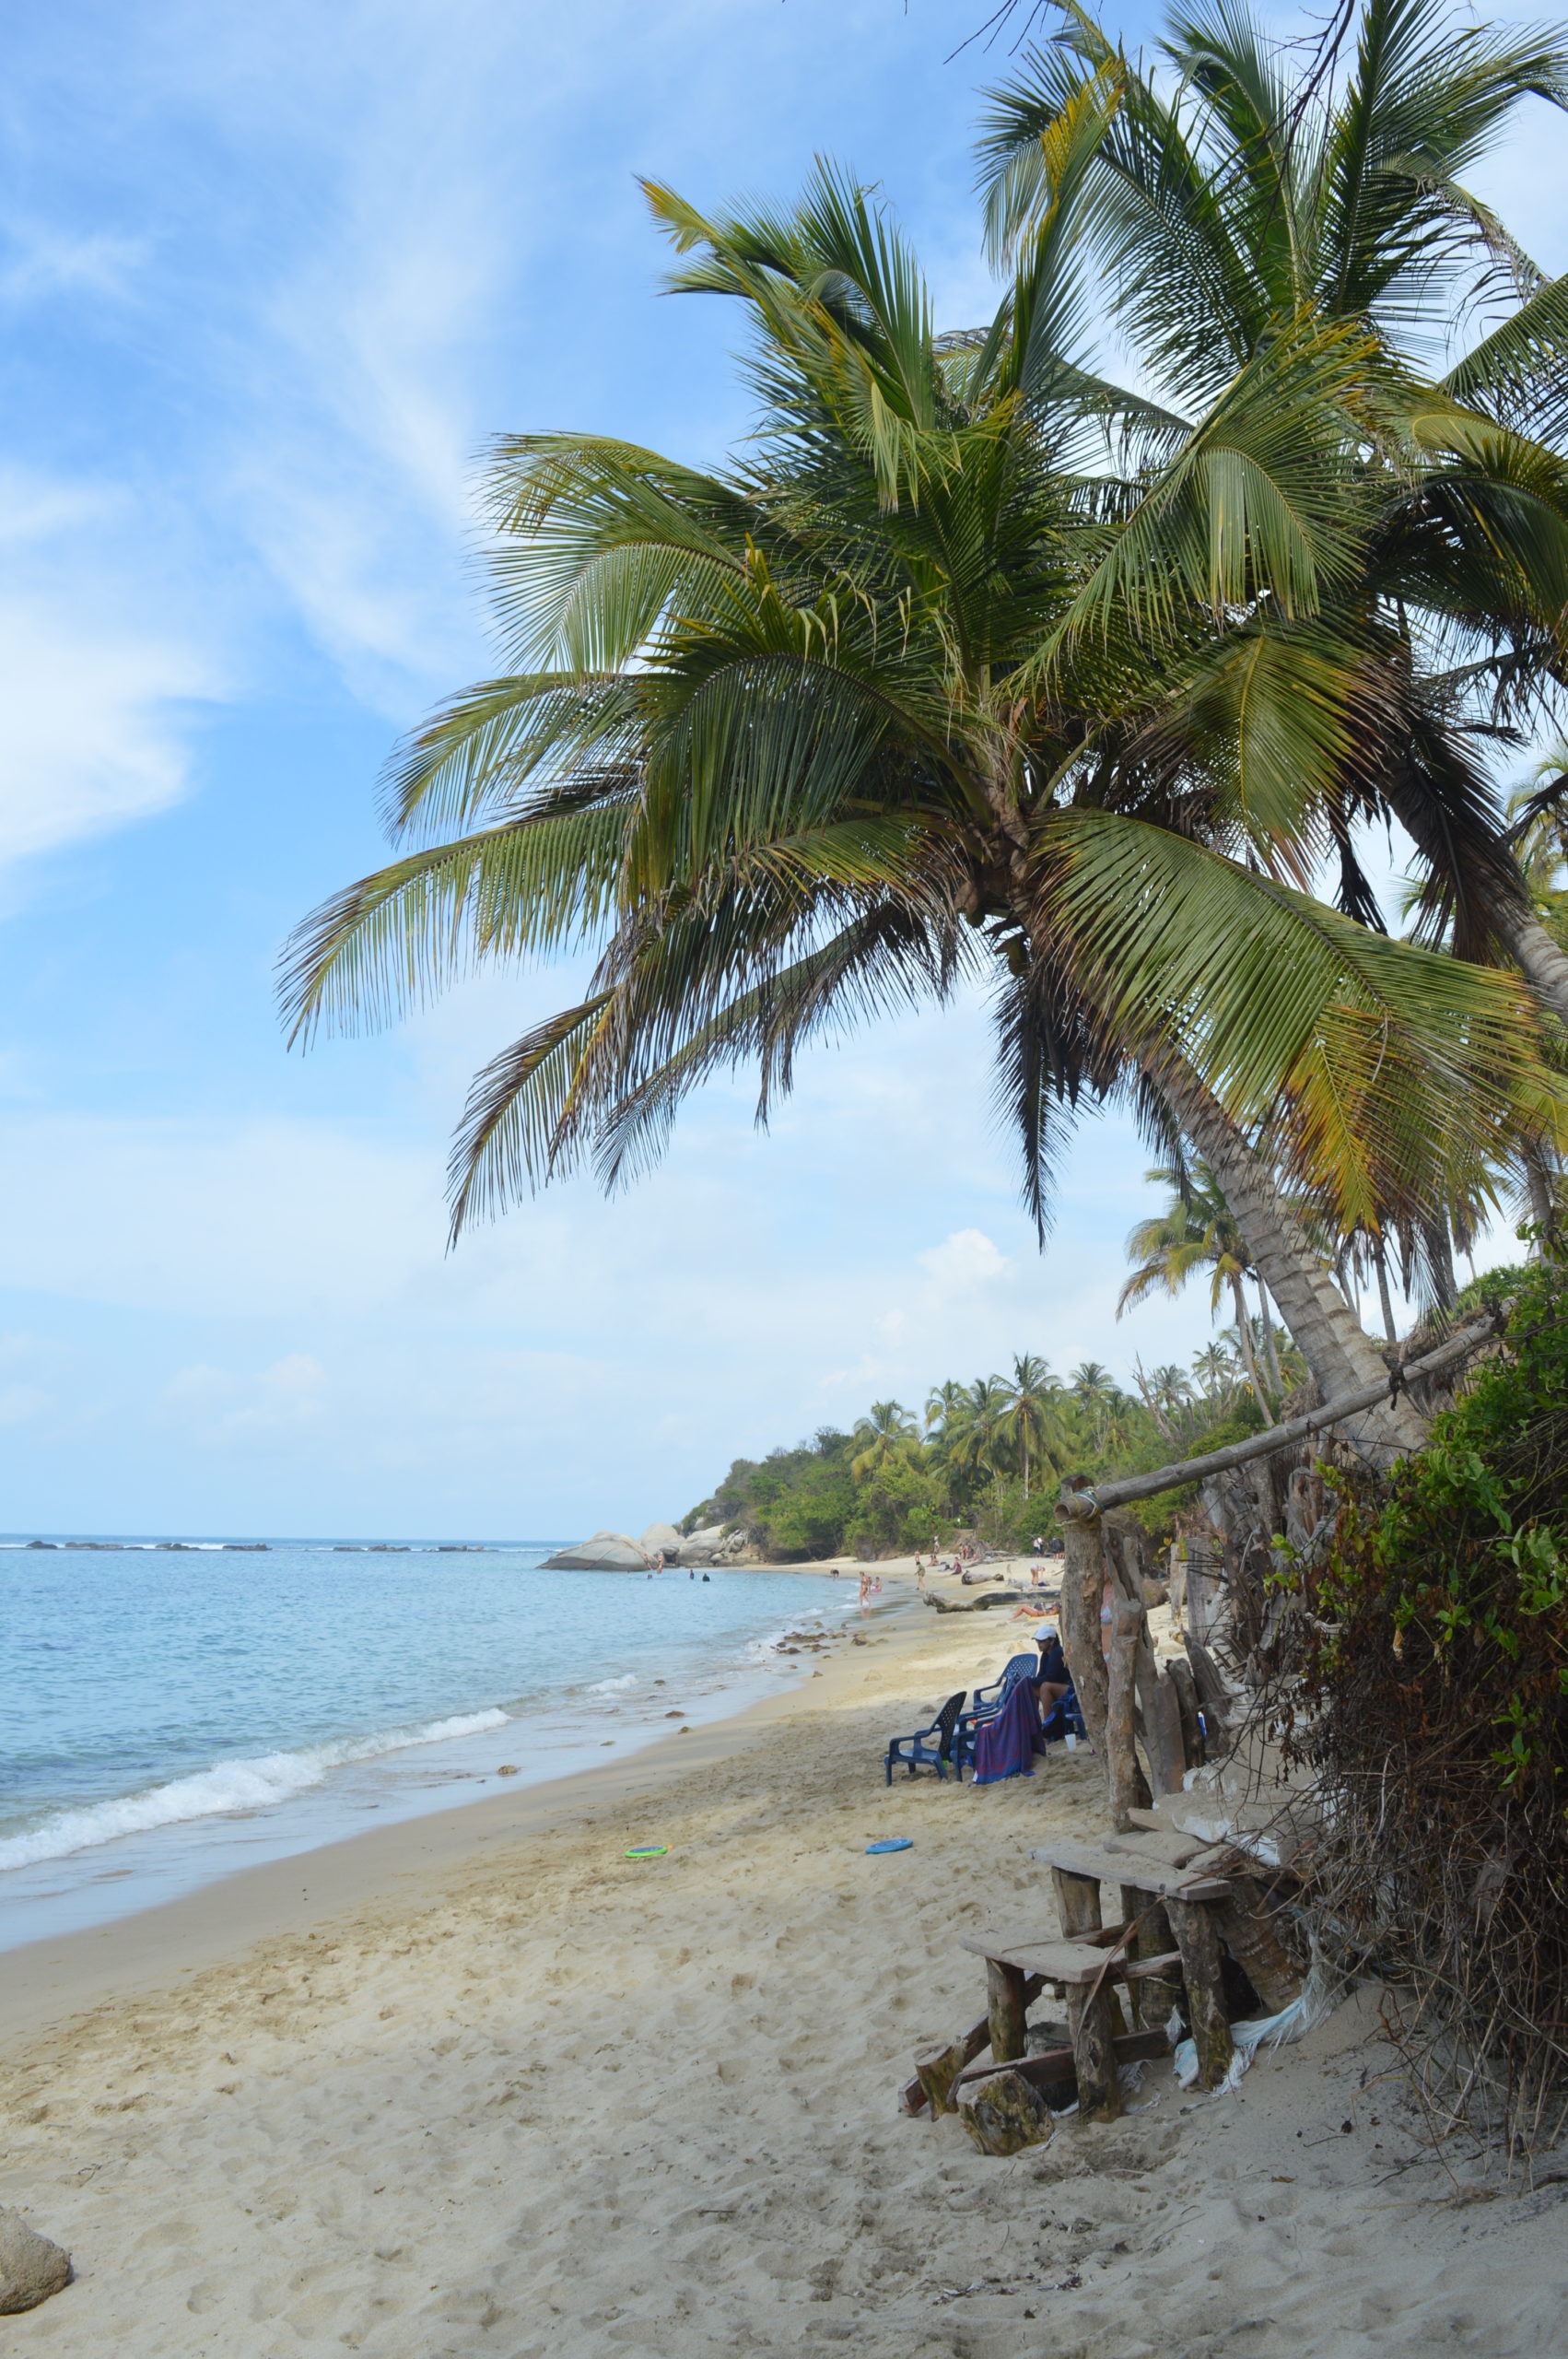 la piscina, plage et palmier des caraibes